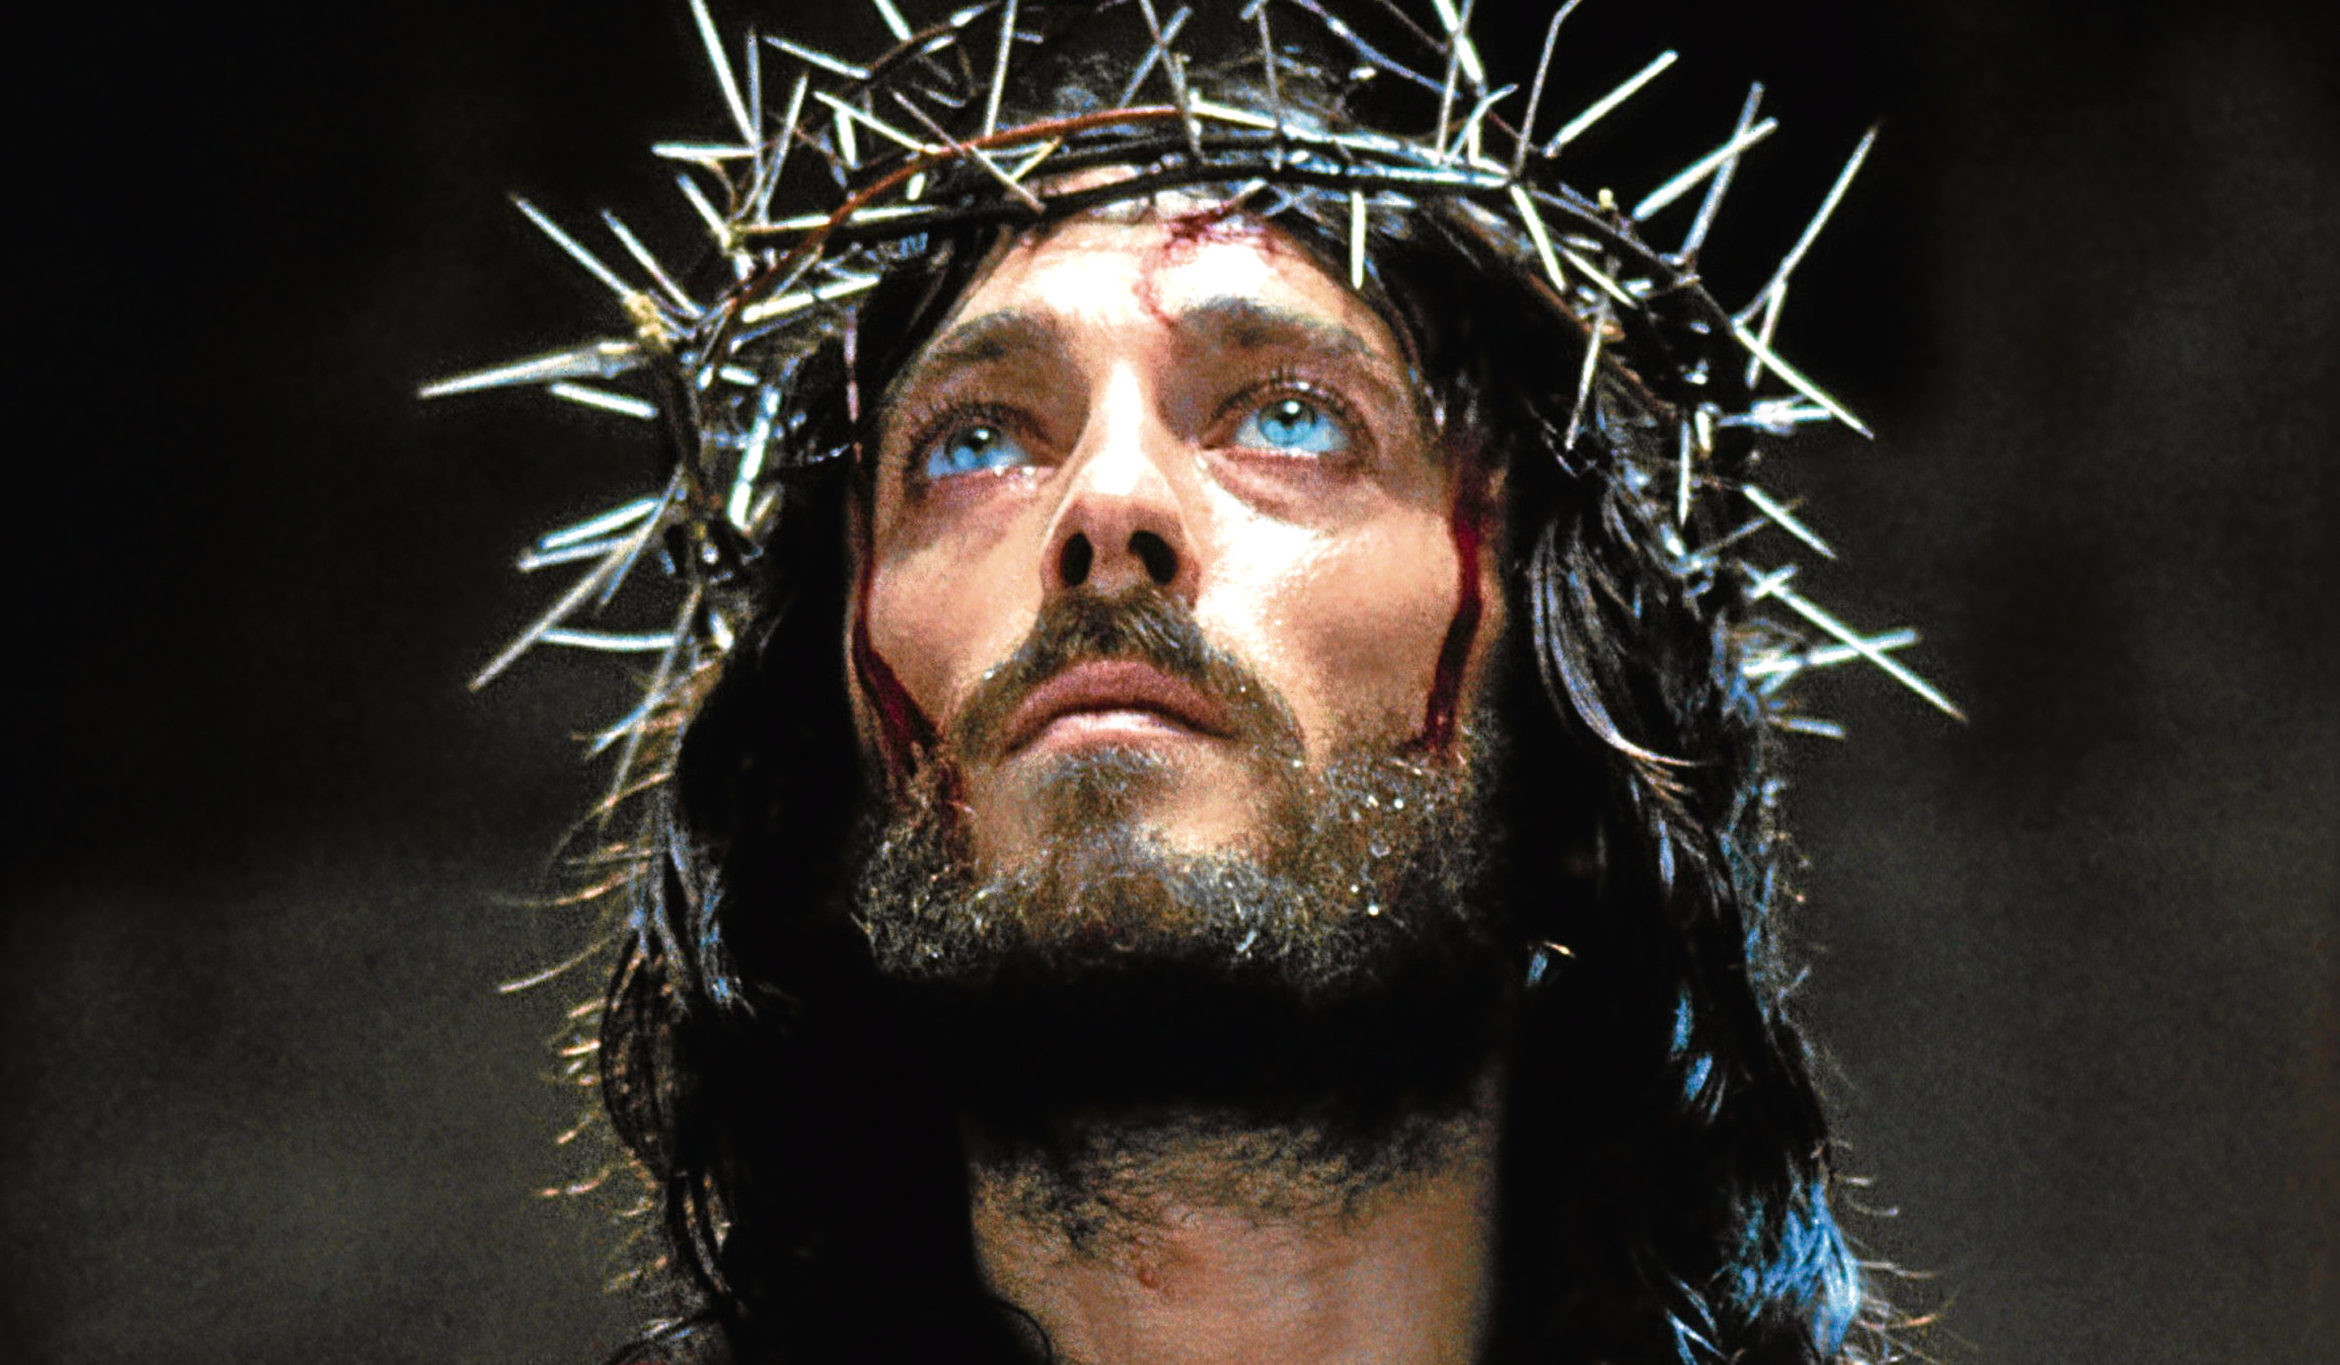 Ιησούς Χριστός: Οι ηθοποιοί που τον υποδύθηκαν εκτός του Ρόμπερτ Πάουελ  σε μικρή και μεγάλη οθόνη